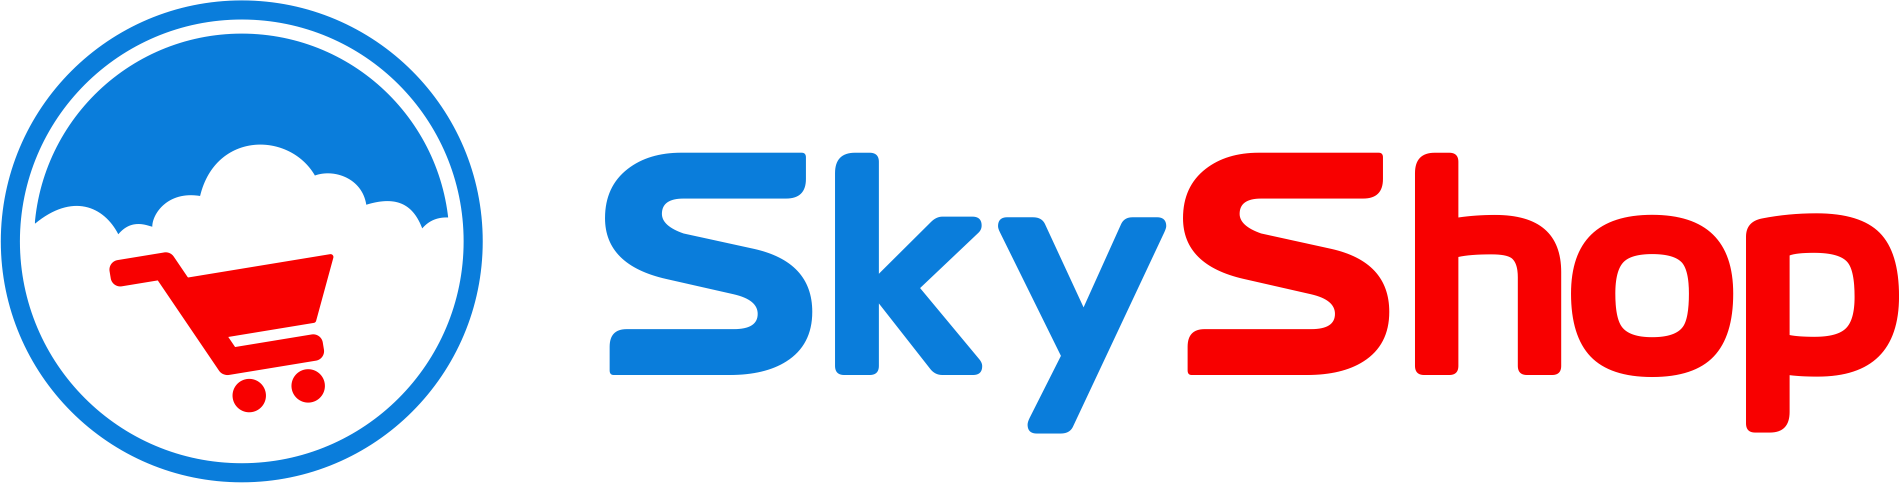 skyshop